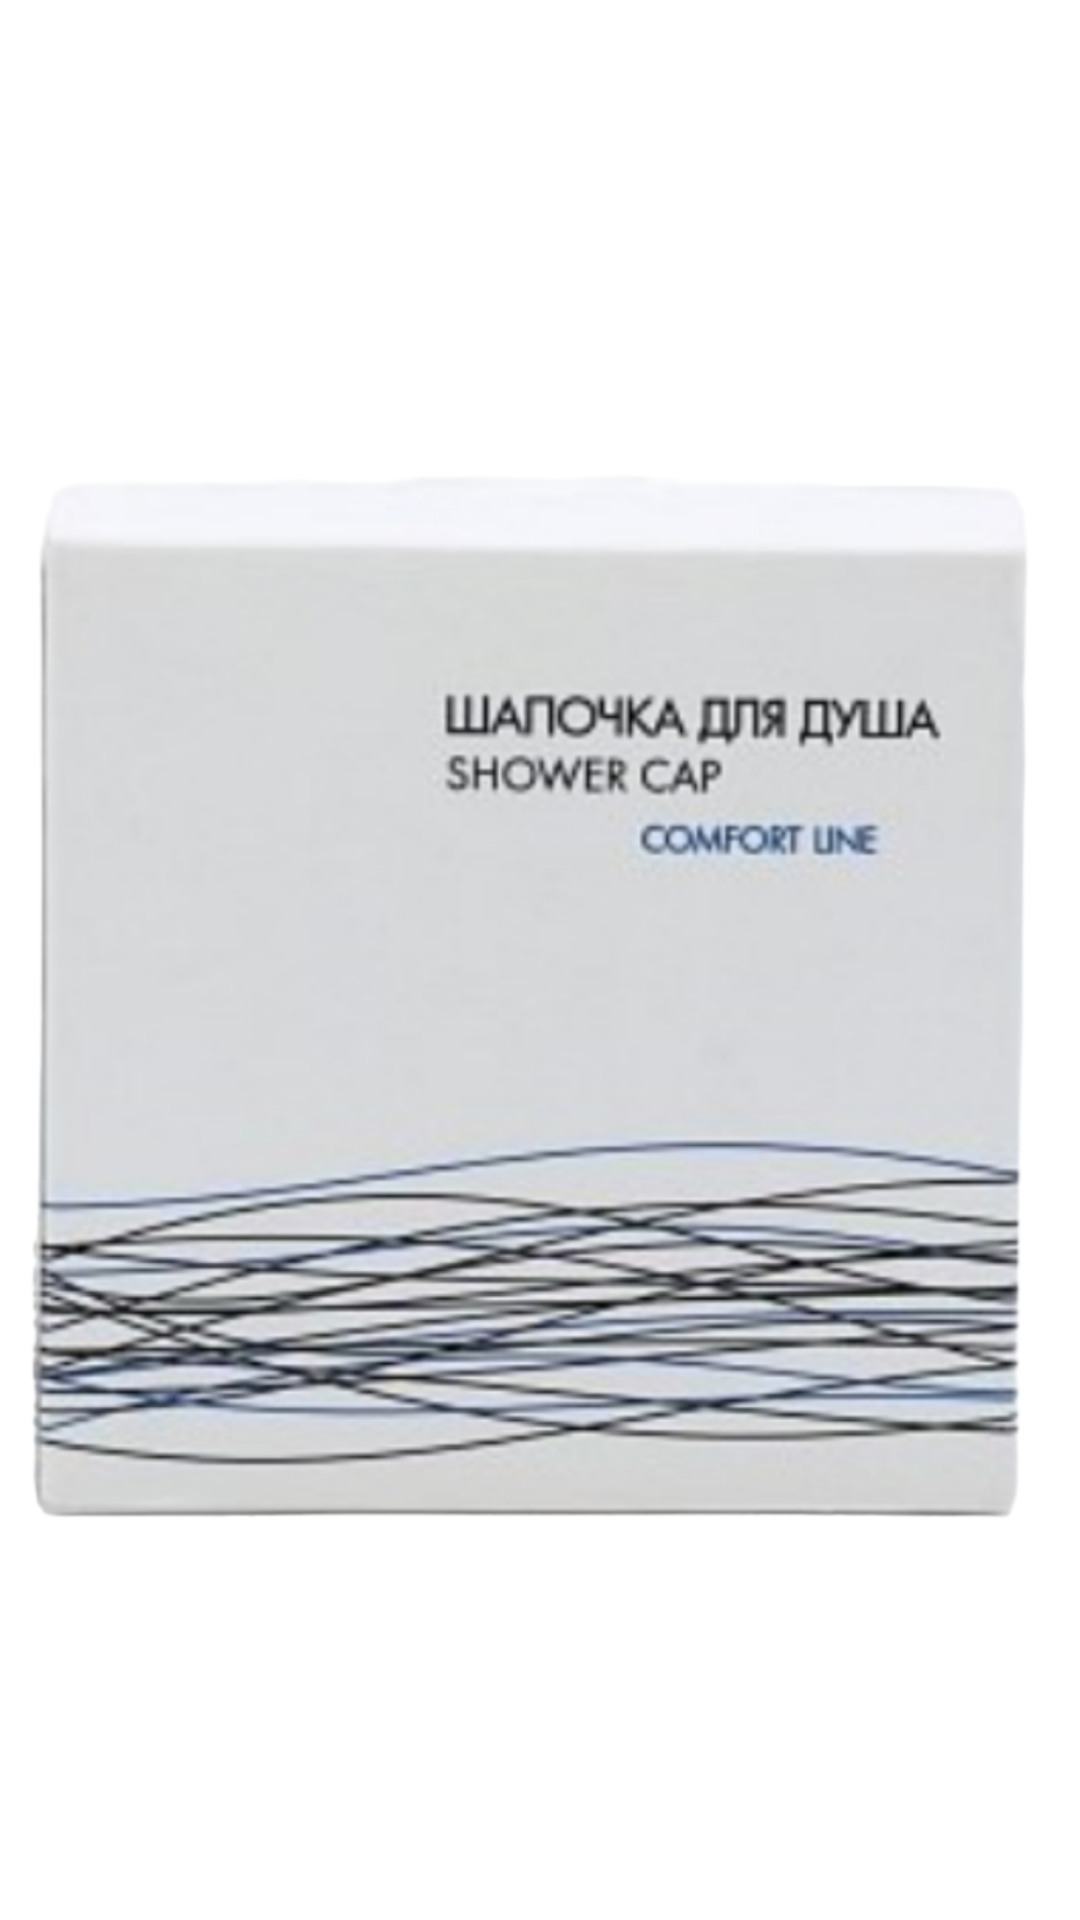 Шапочки для душа Comfort Line картон 250 шт мыло для рук comfort line флопак 13 г 100 шт